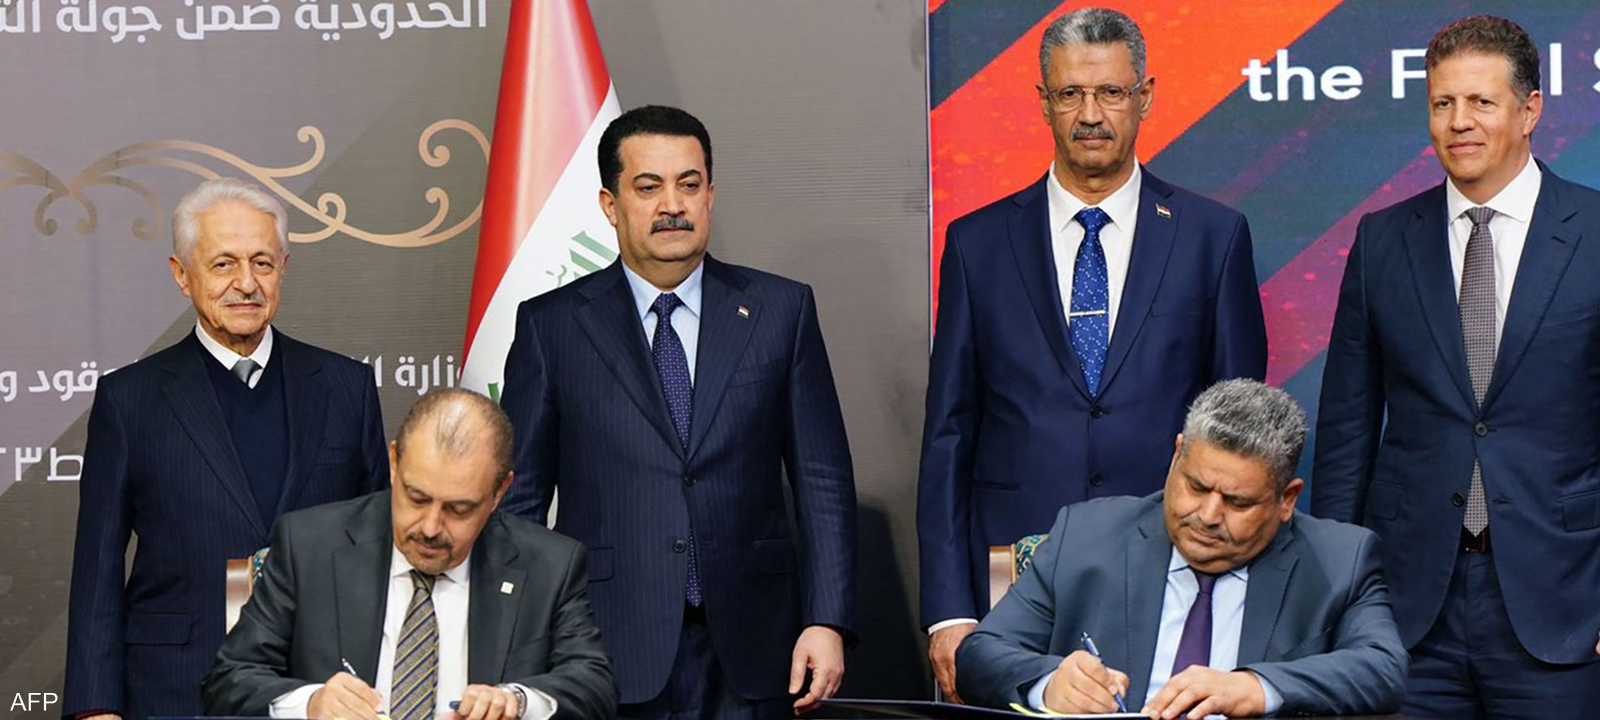 جانب من توقيع عقود النفط والغاز الجديدة في العراق